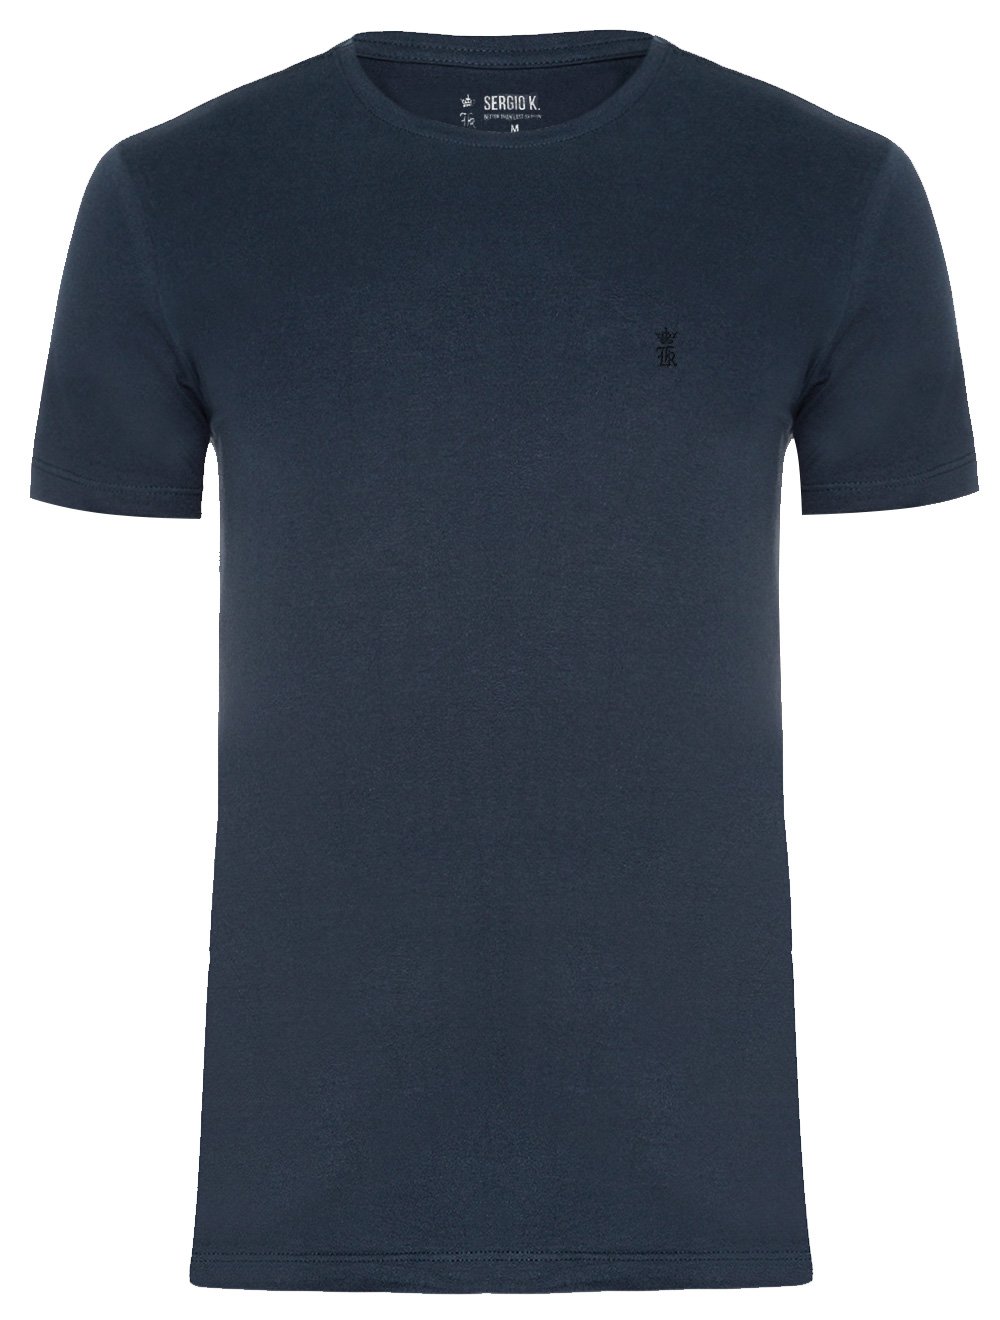 Camiseta Sergio K Masculina Basic Front Black Logo Azul Marinho